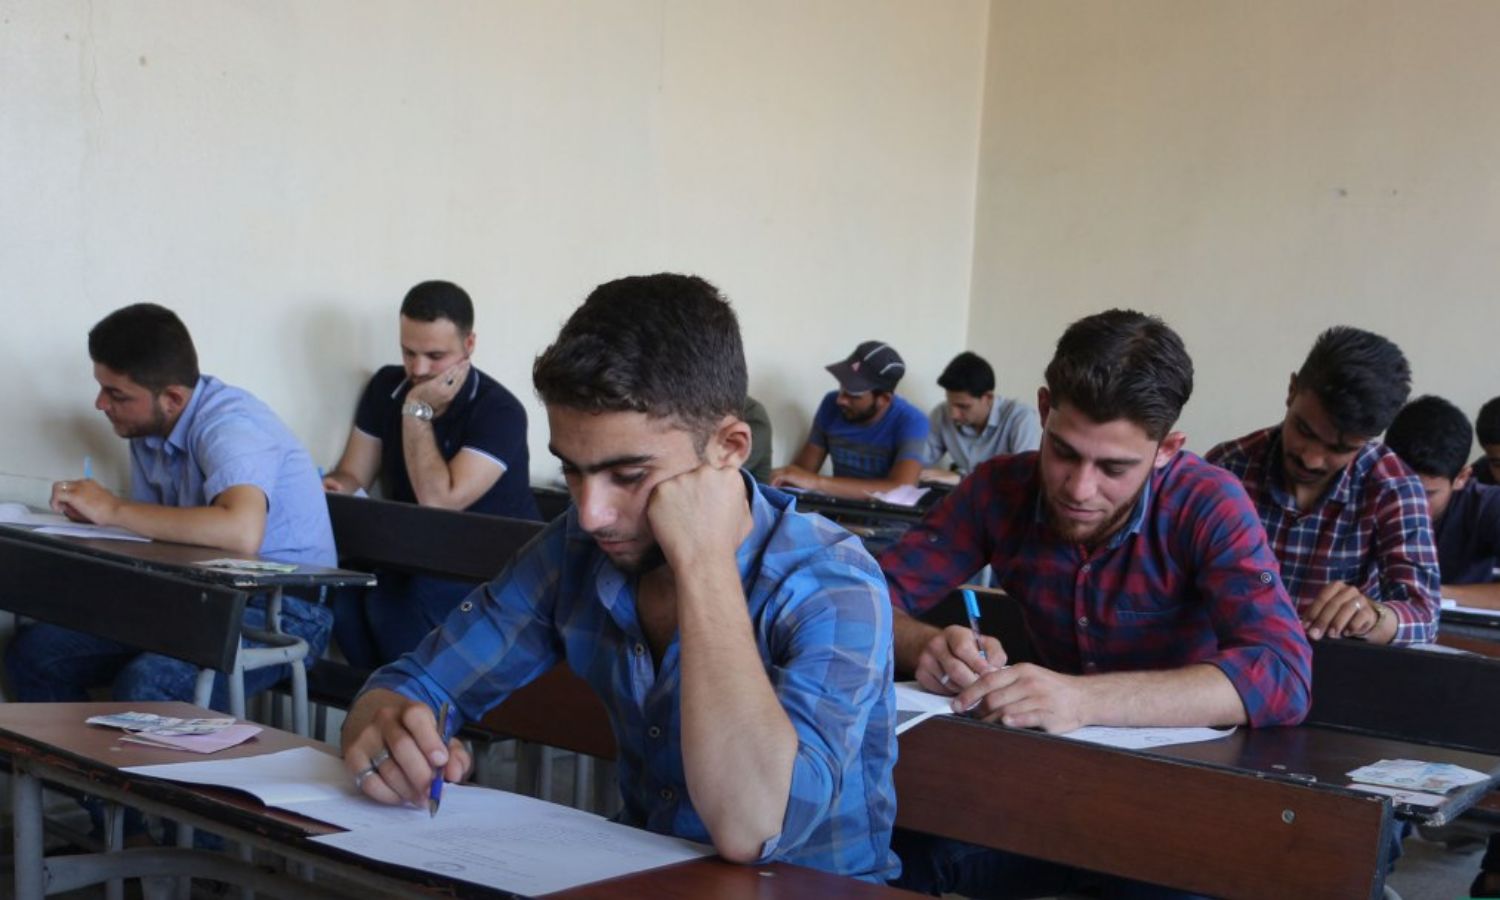 طلاب جامعة "حلب الشهباء" خلال امتحانات في مدينة سرمدا بريف إدلب الشمالي - 9 من تموز 2019 (وكالة أنباء الشام)